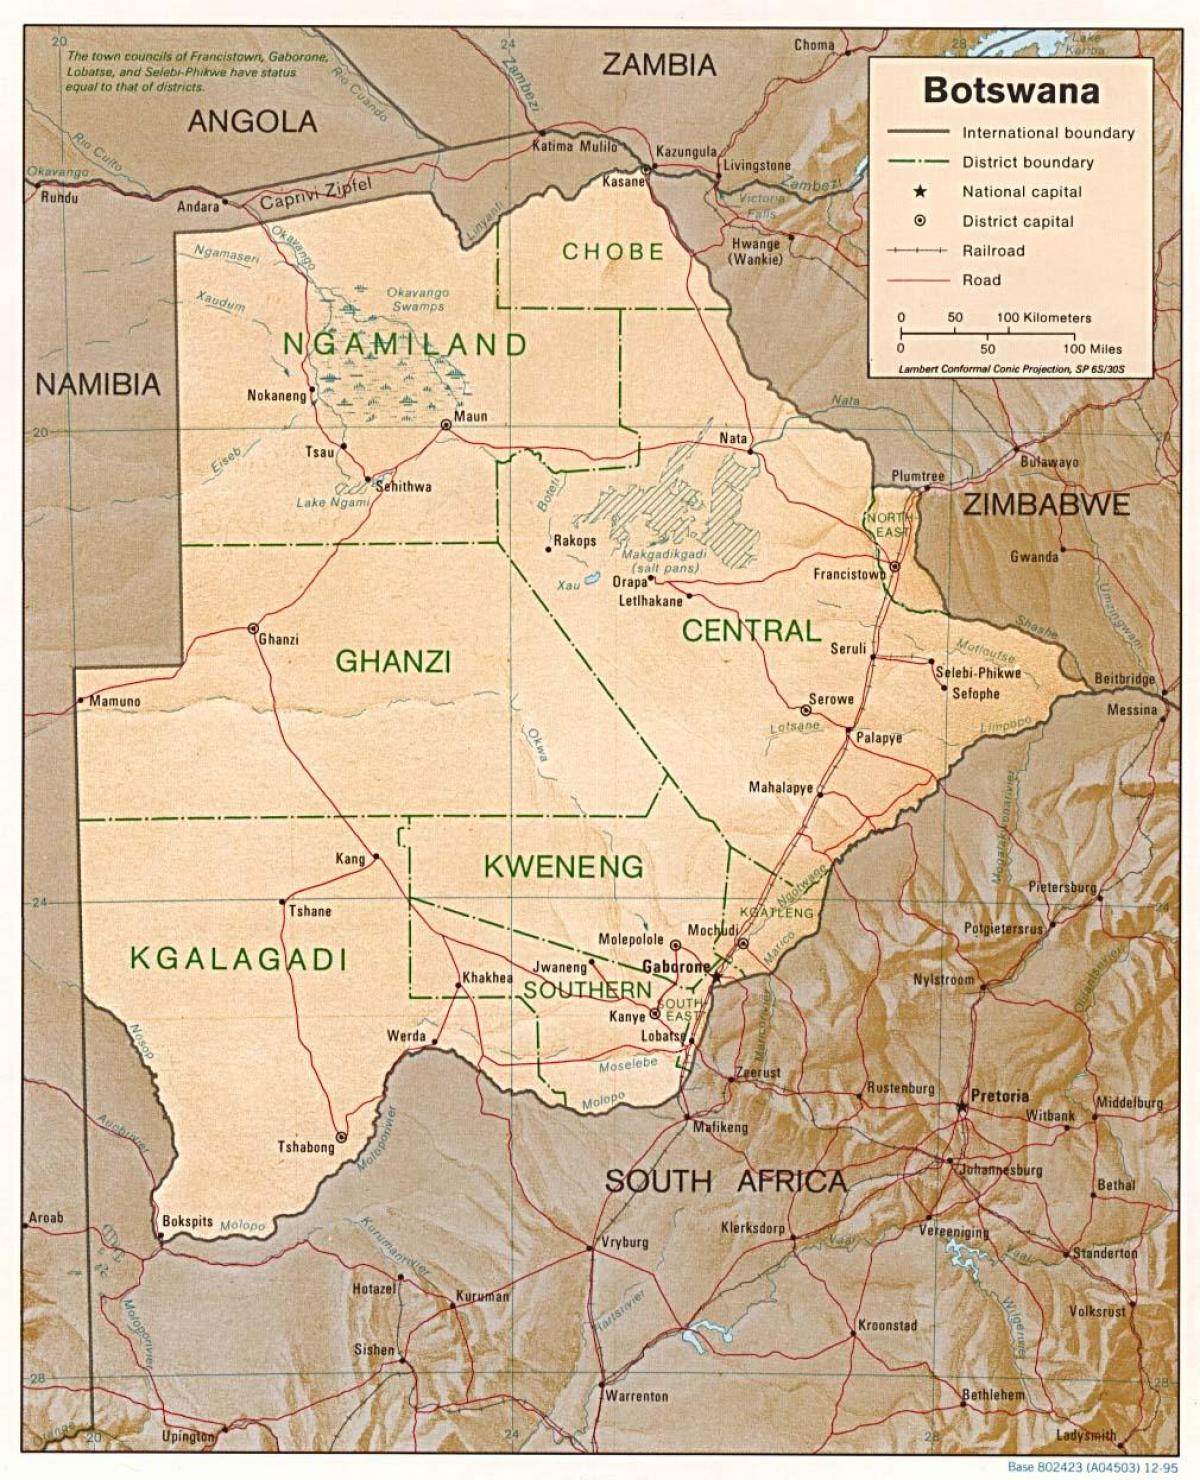 χάρτης της Μποτσουάνα δείχνοντας πόλεις και χωριά